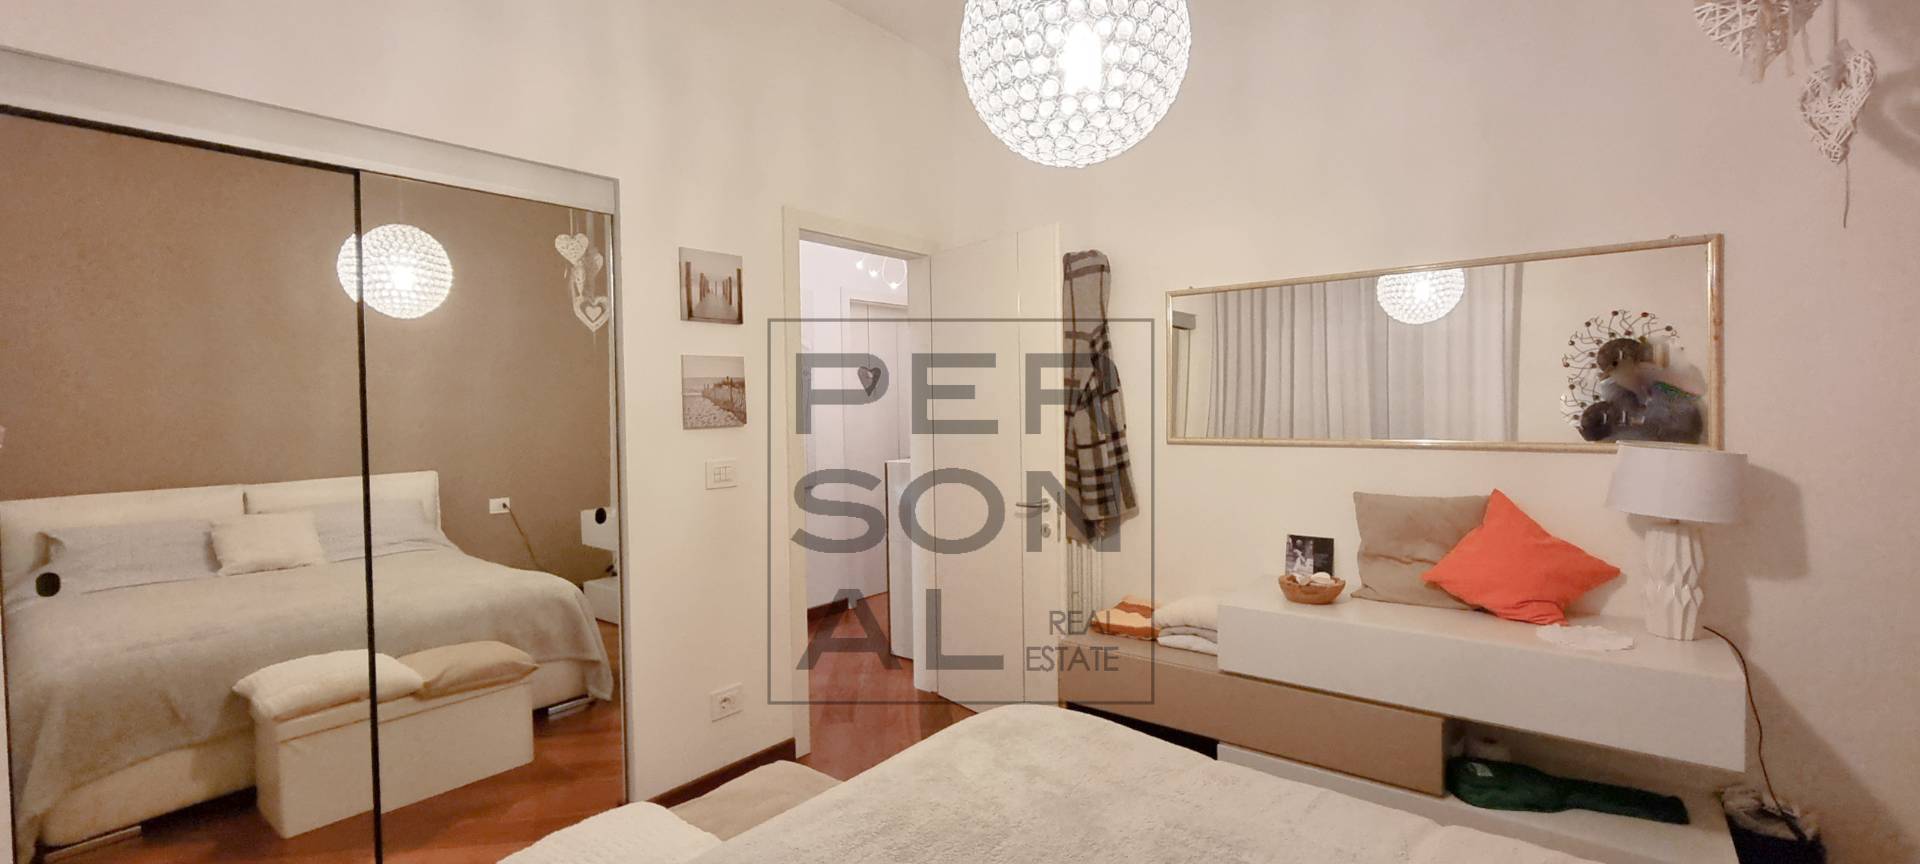 Foto appartamento in affitto a Lavis (Trento)